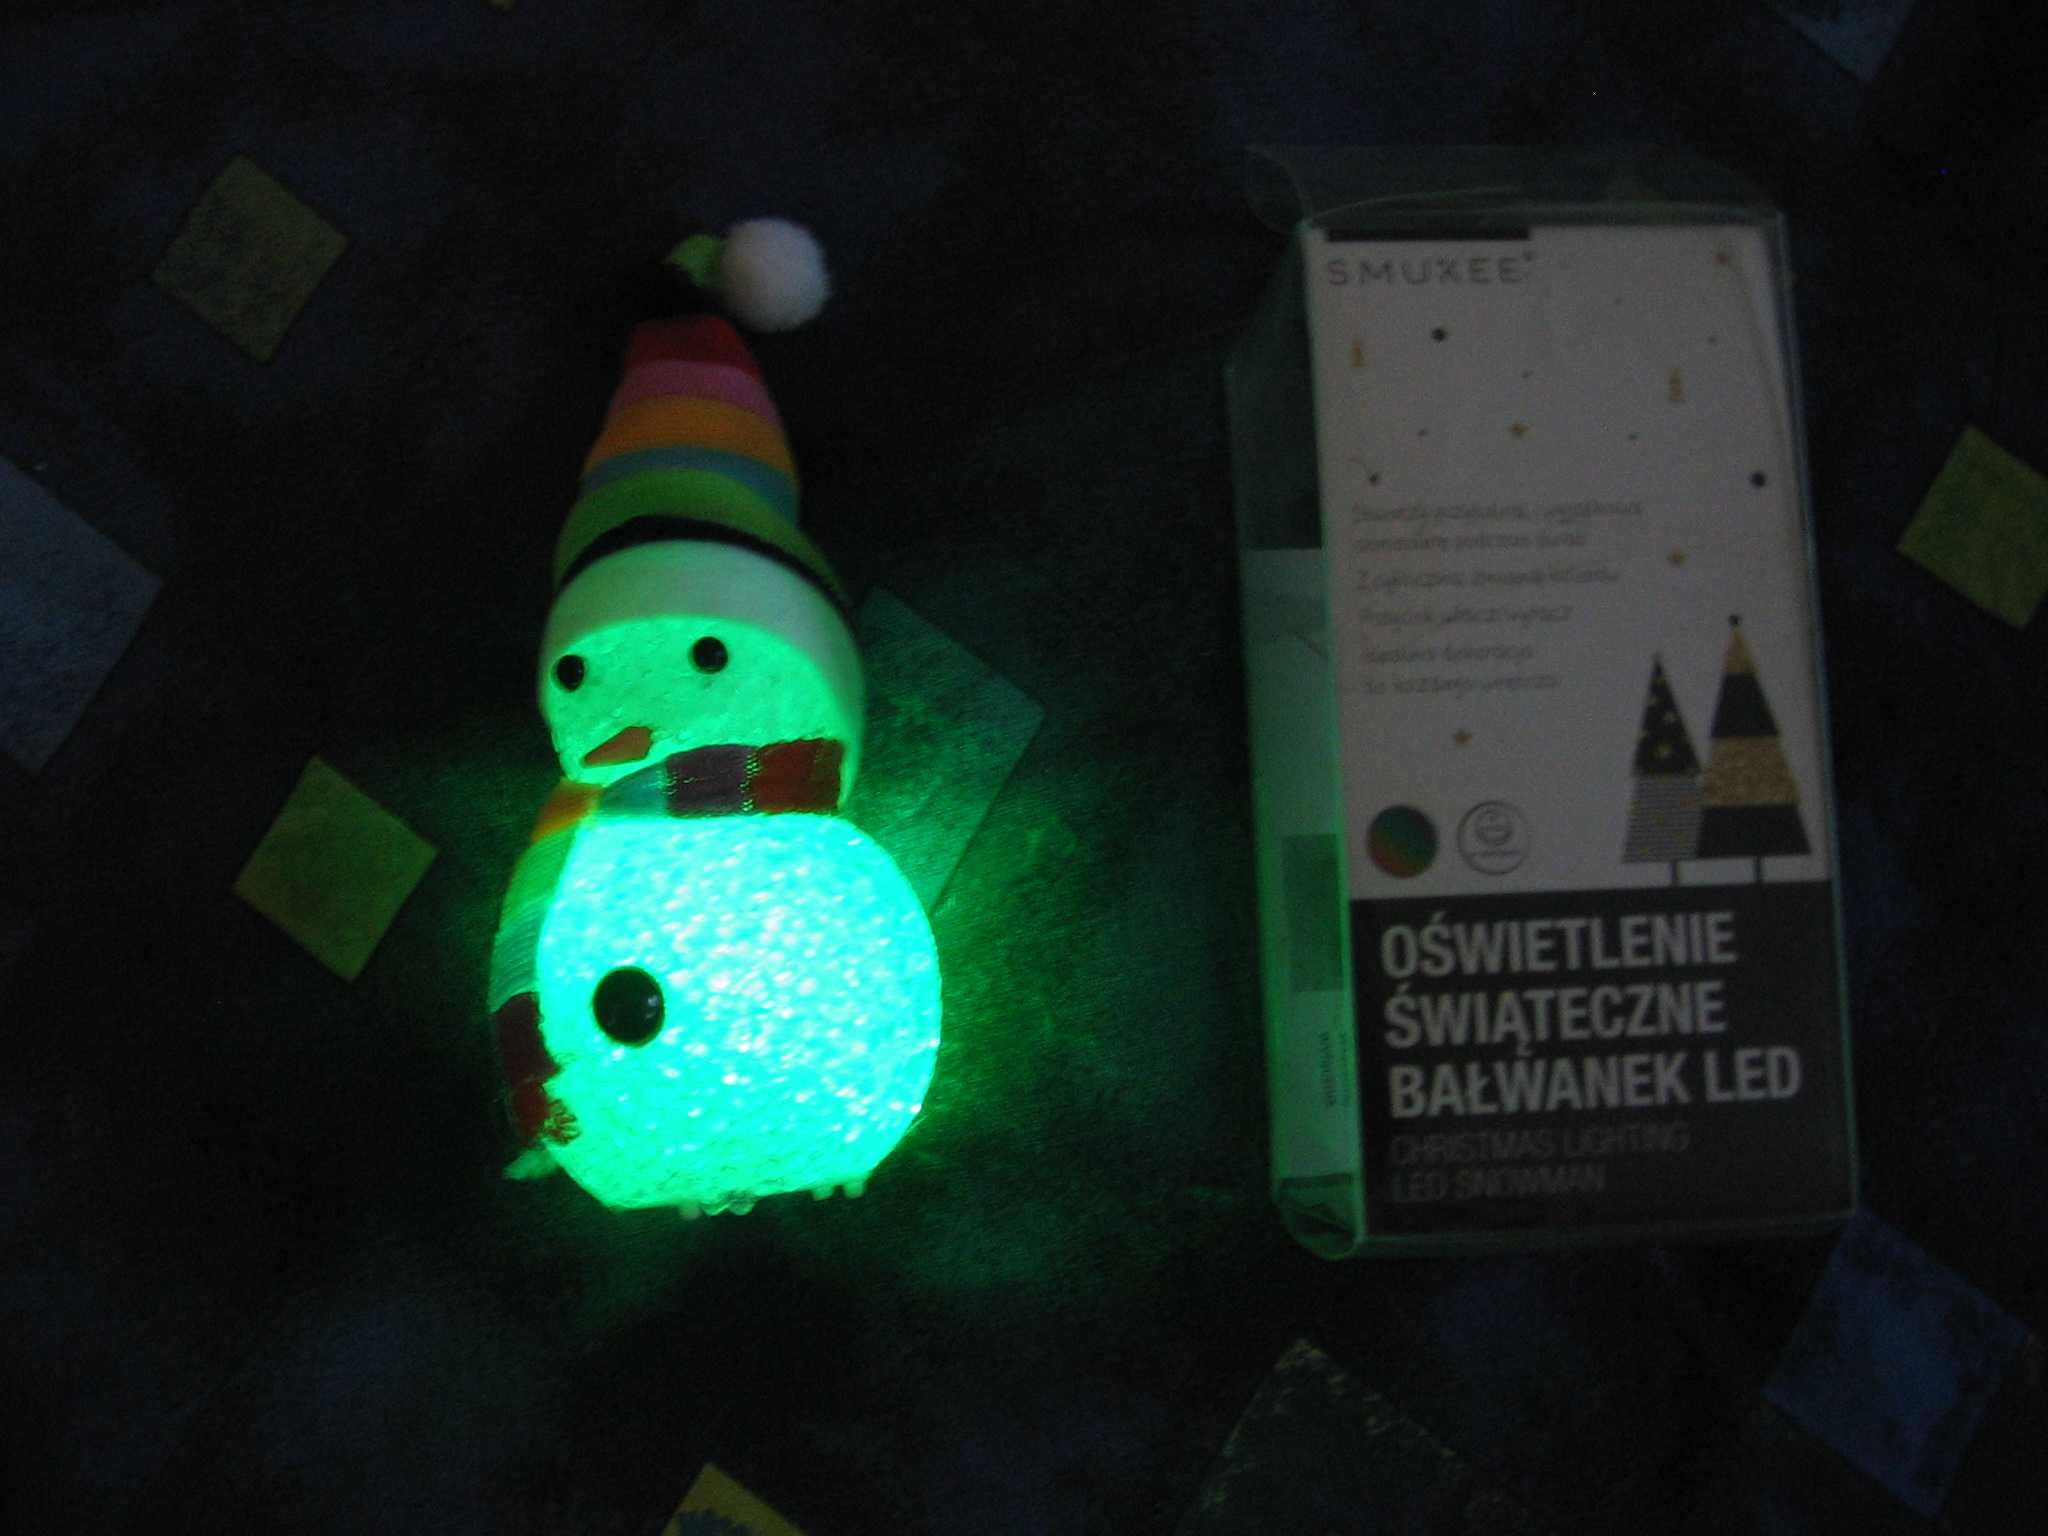 Oświetlenie świąteczne bałwanek LED